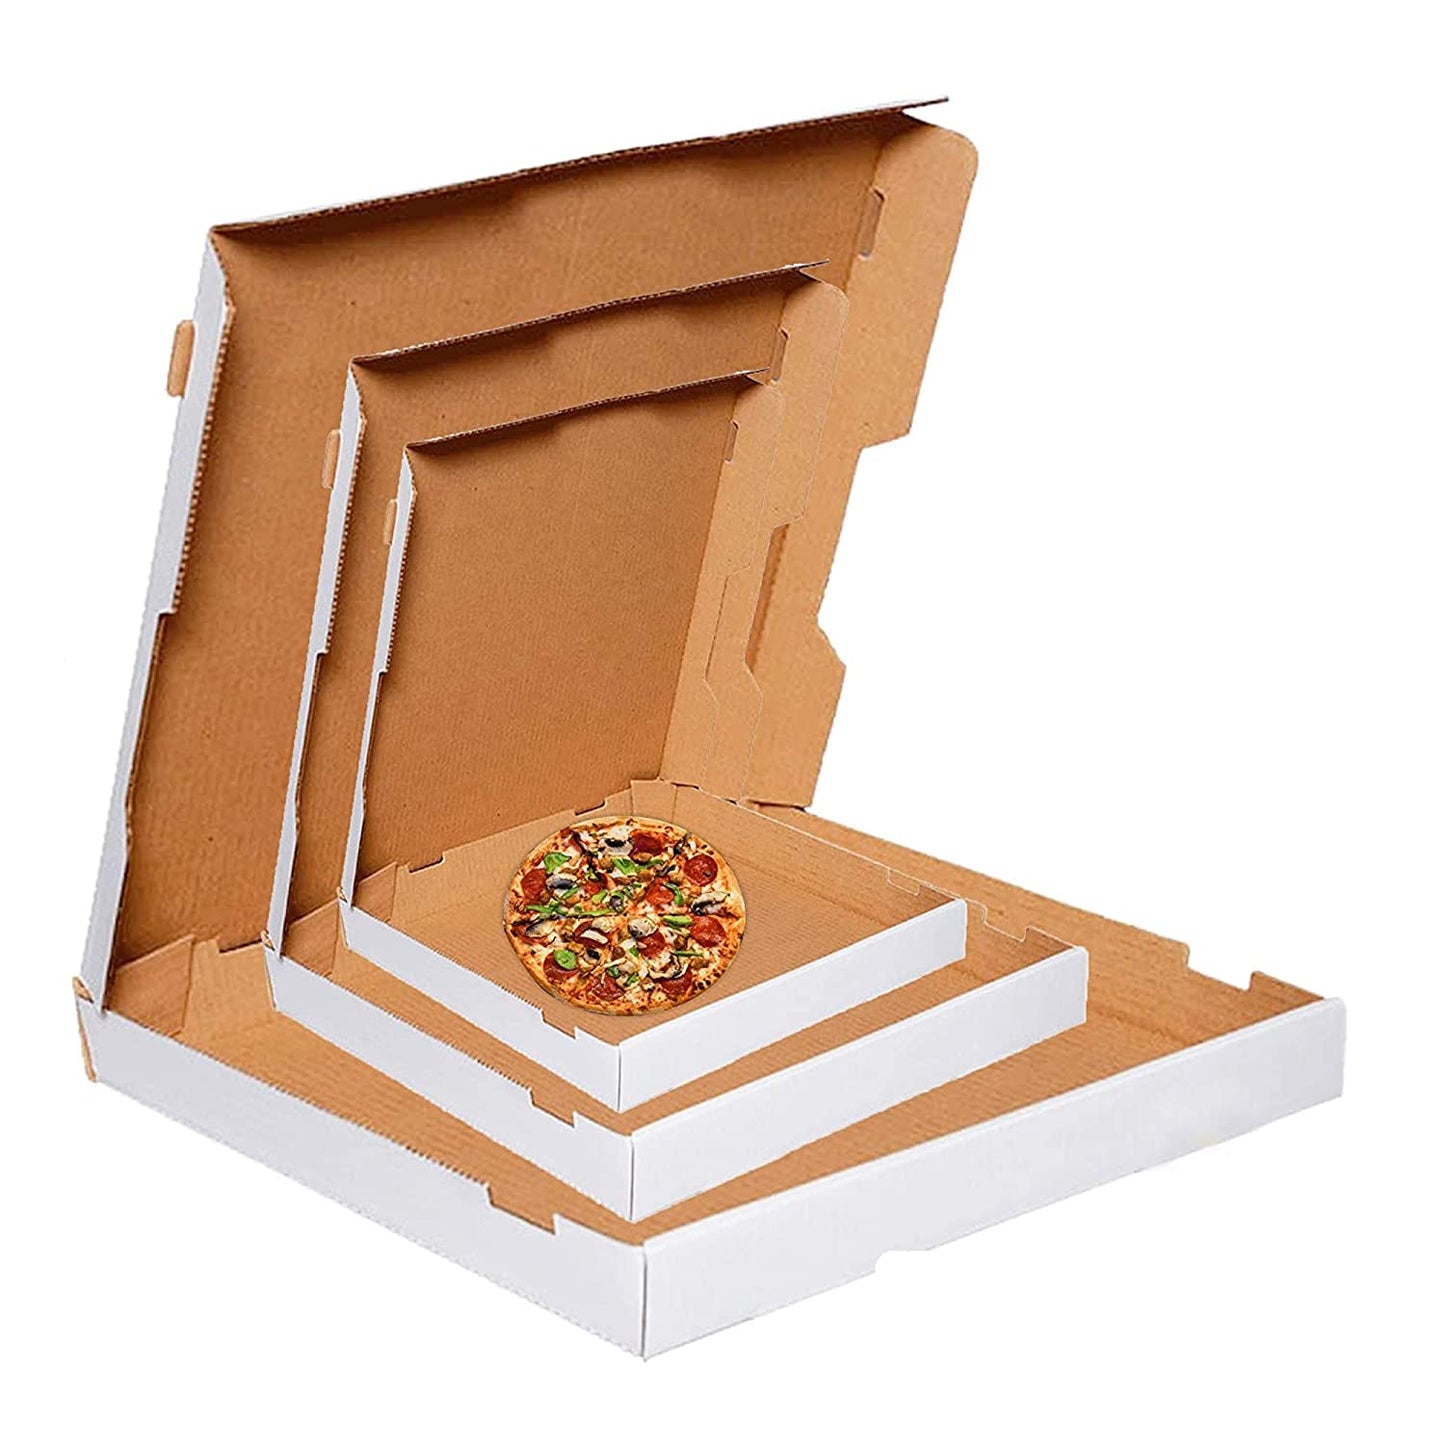 Pizza Boxes Plain Brown Or White Postal Box Takeaway Style Boxes